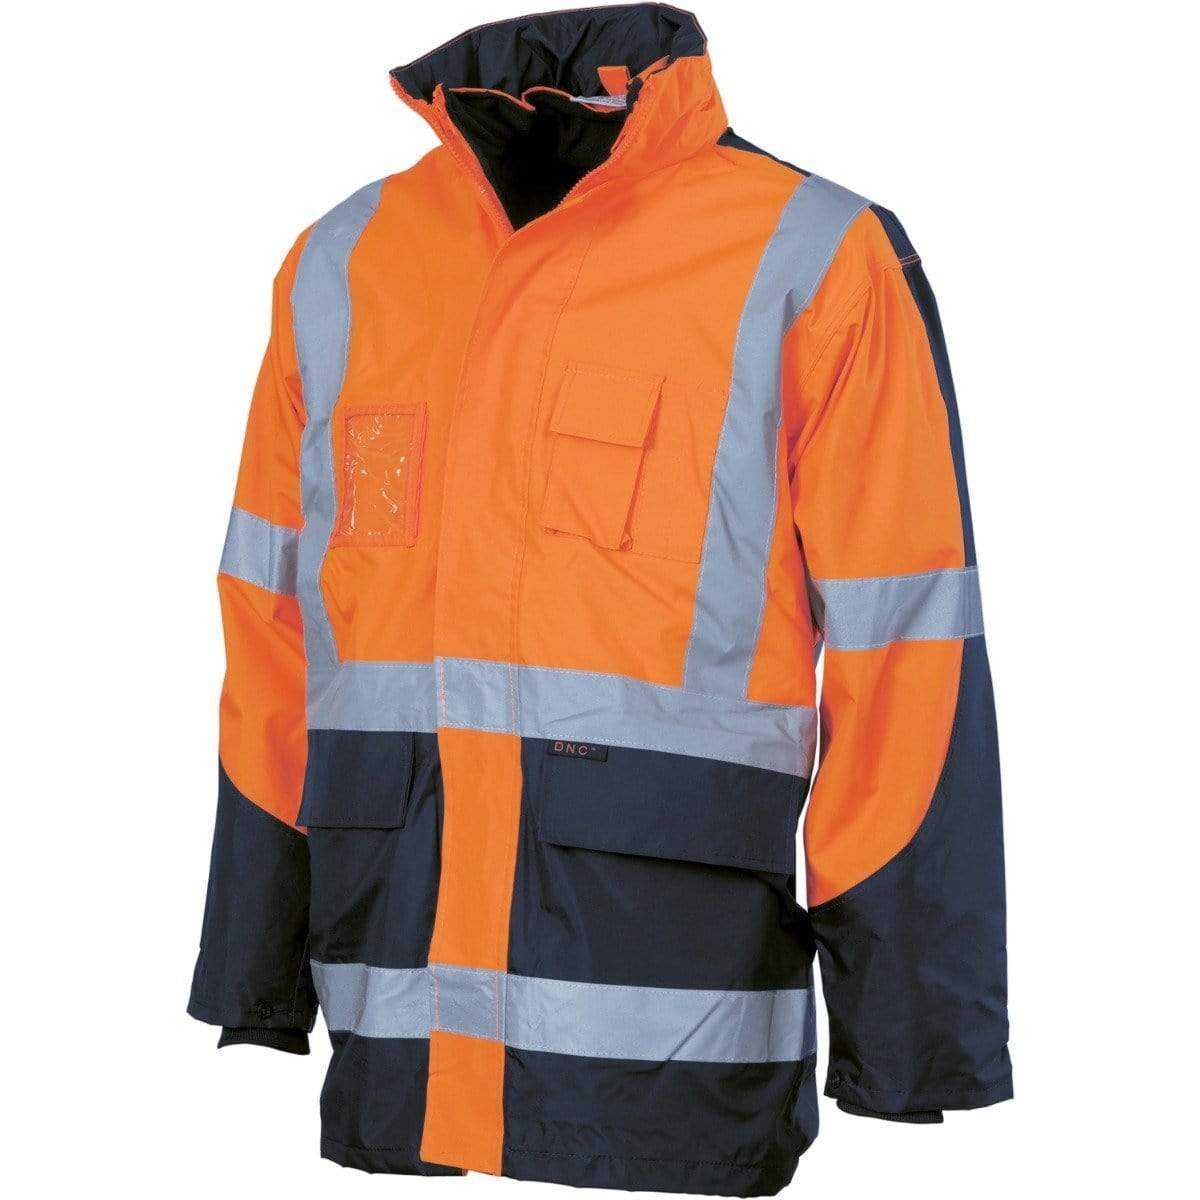 Dnc Workwear Hi-vis Cross Back 2 Tone D/n 6-in-1 Contrast Jacket - 3998 Work Wear DNC Workwear Orange/Navy S 